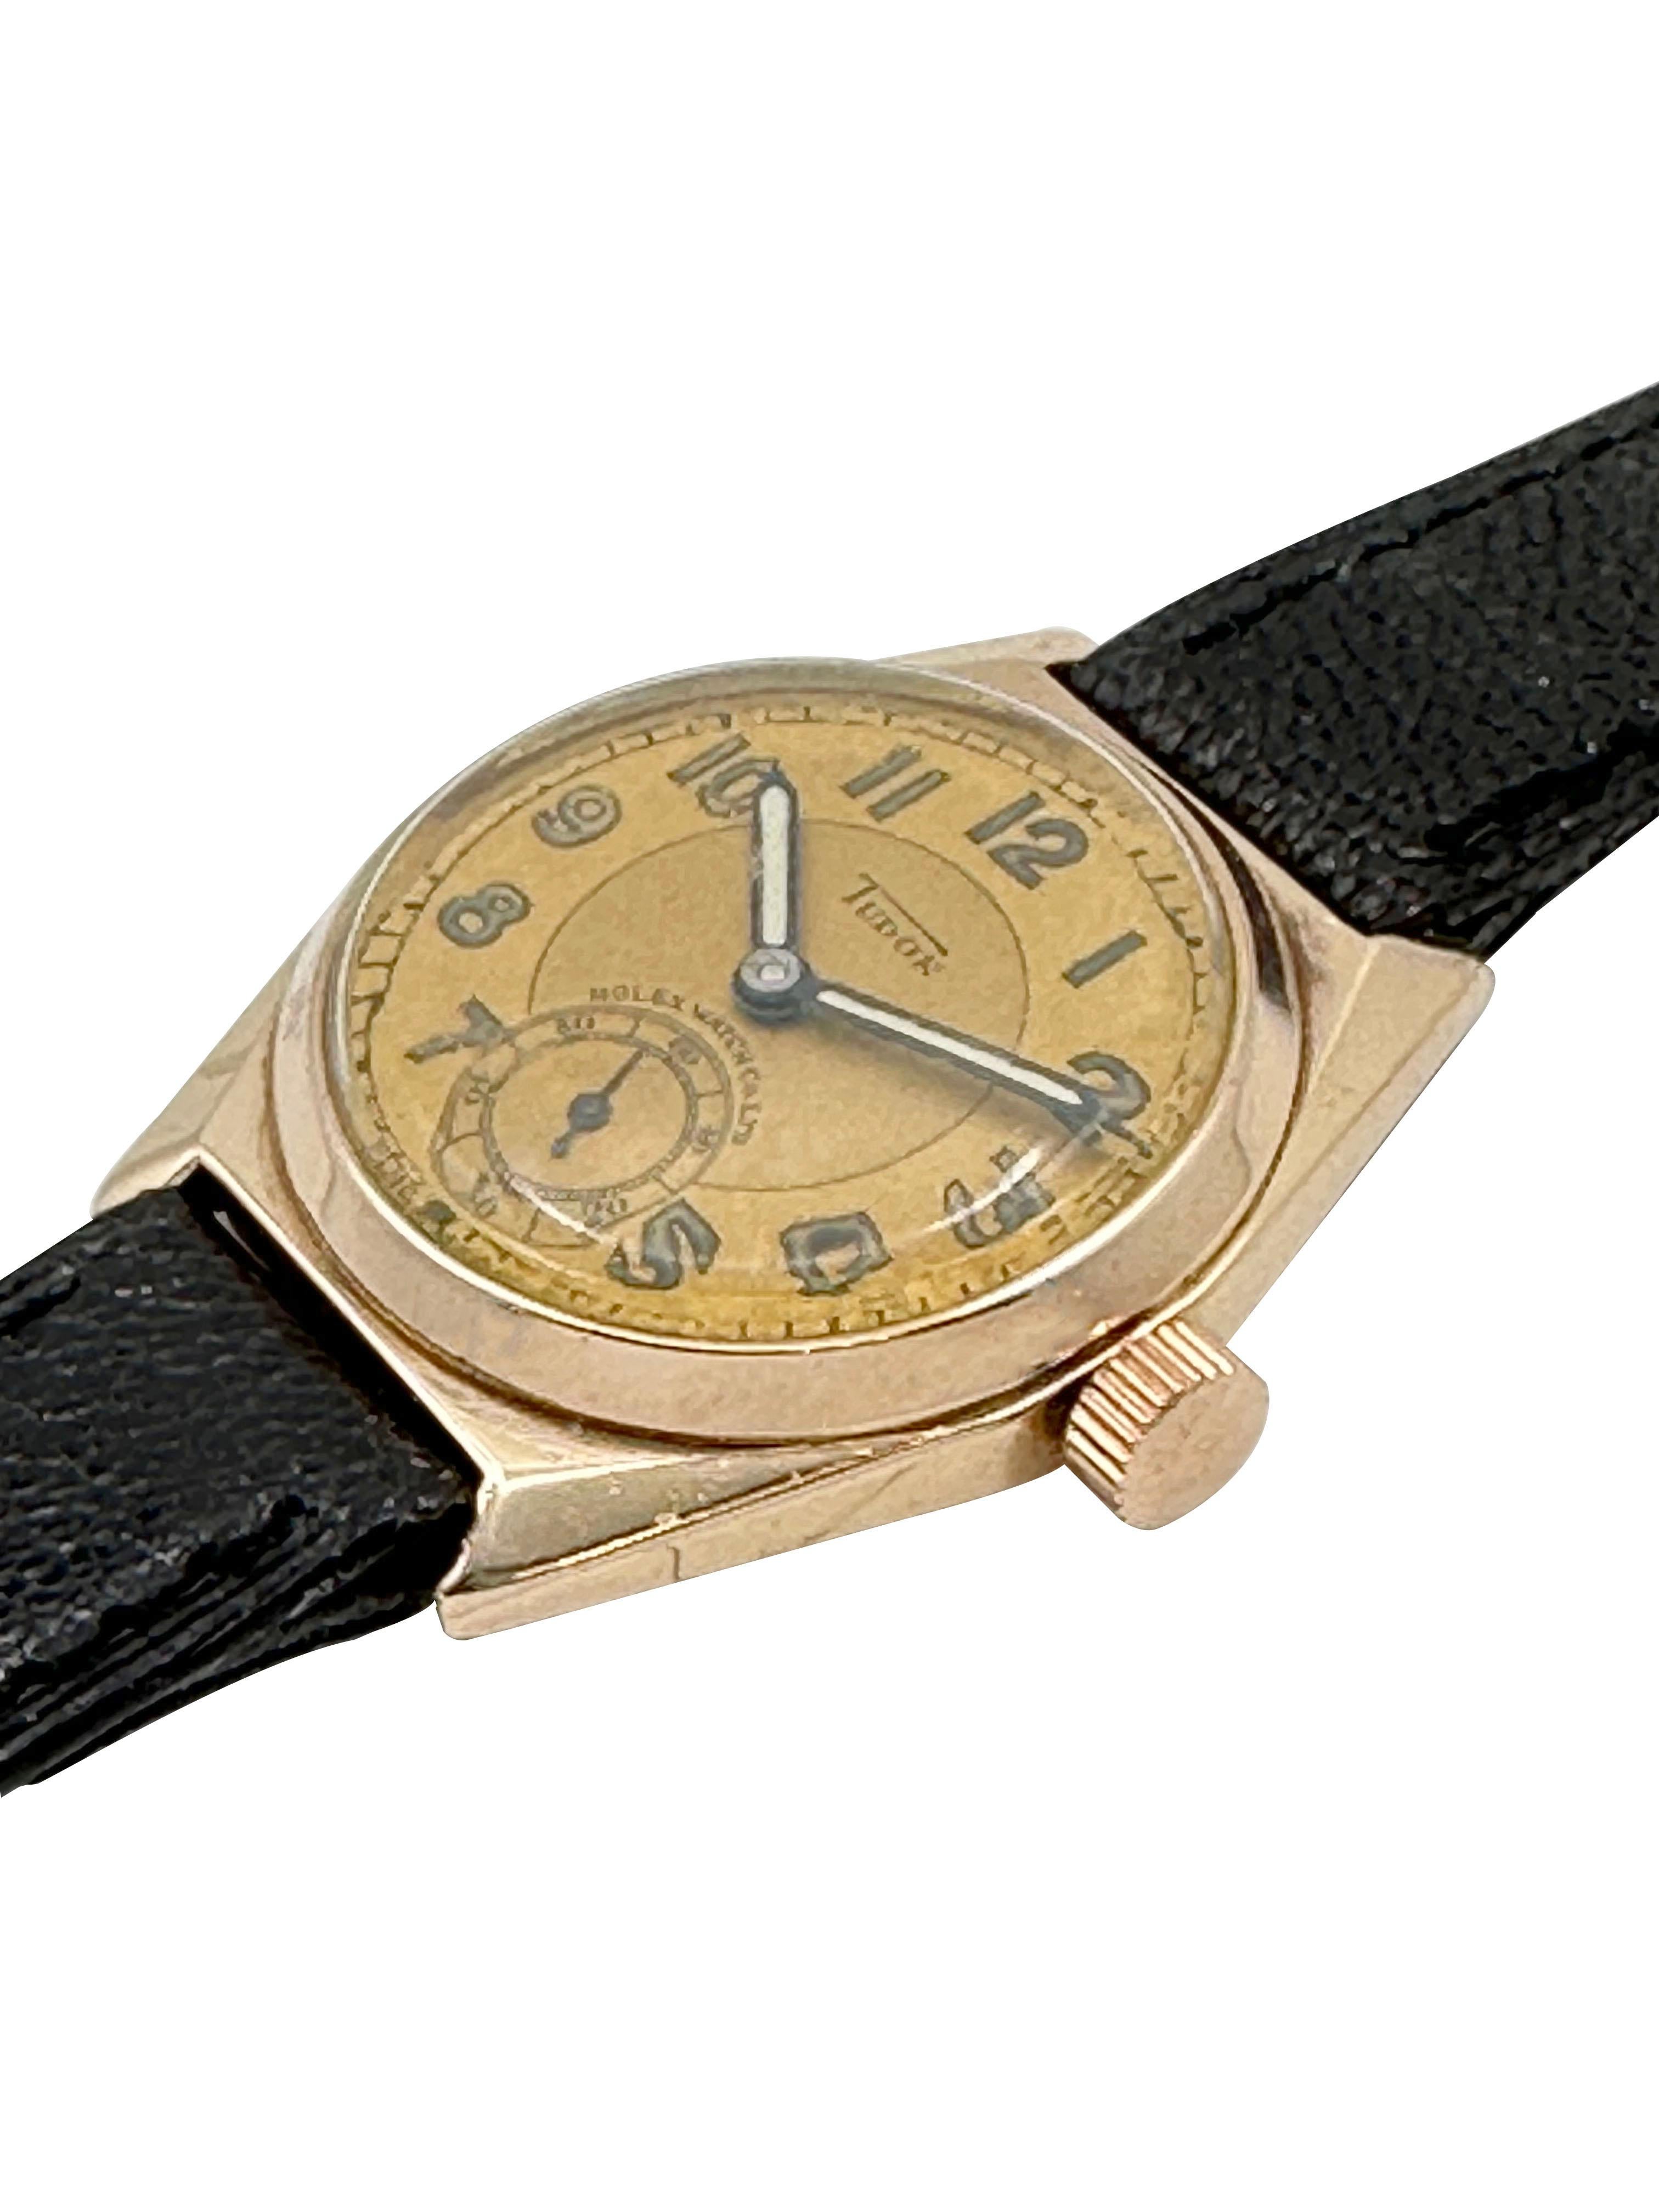 Montre-bracelet Tudor Rolex datant de 1930, 33 x 27 M.M. Boîtier 3 pièces en or rose 9k de forme Tonneau. Mouvement mécanique de 15 Jewell, à remontage manuel. Cadran d'origine en or 2 tons avec chiffres arabes lumineux et aiguilles d'origine avec